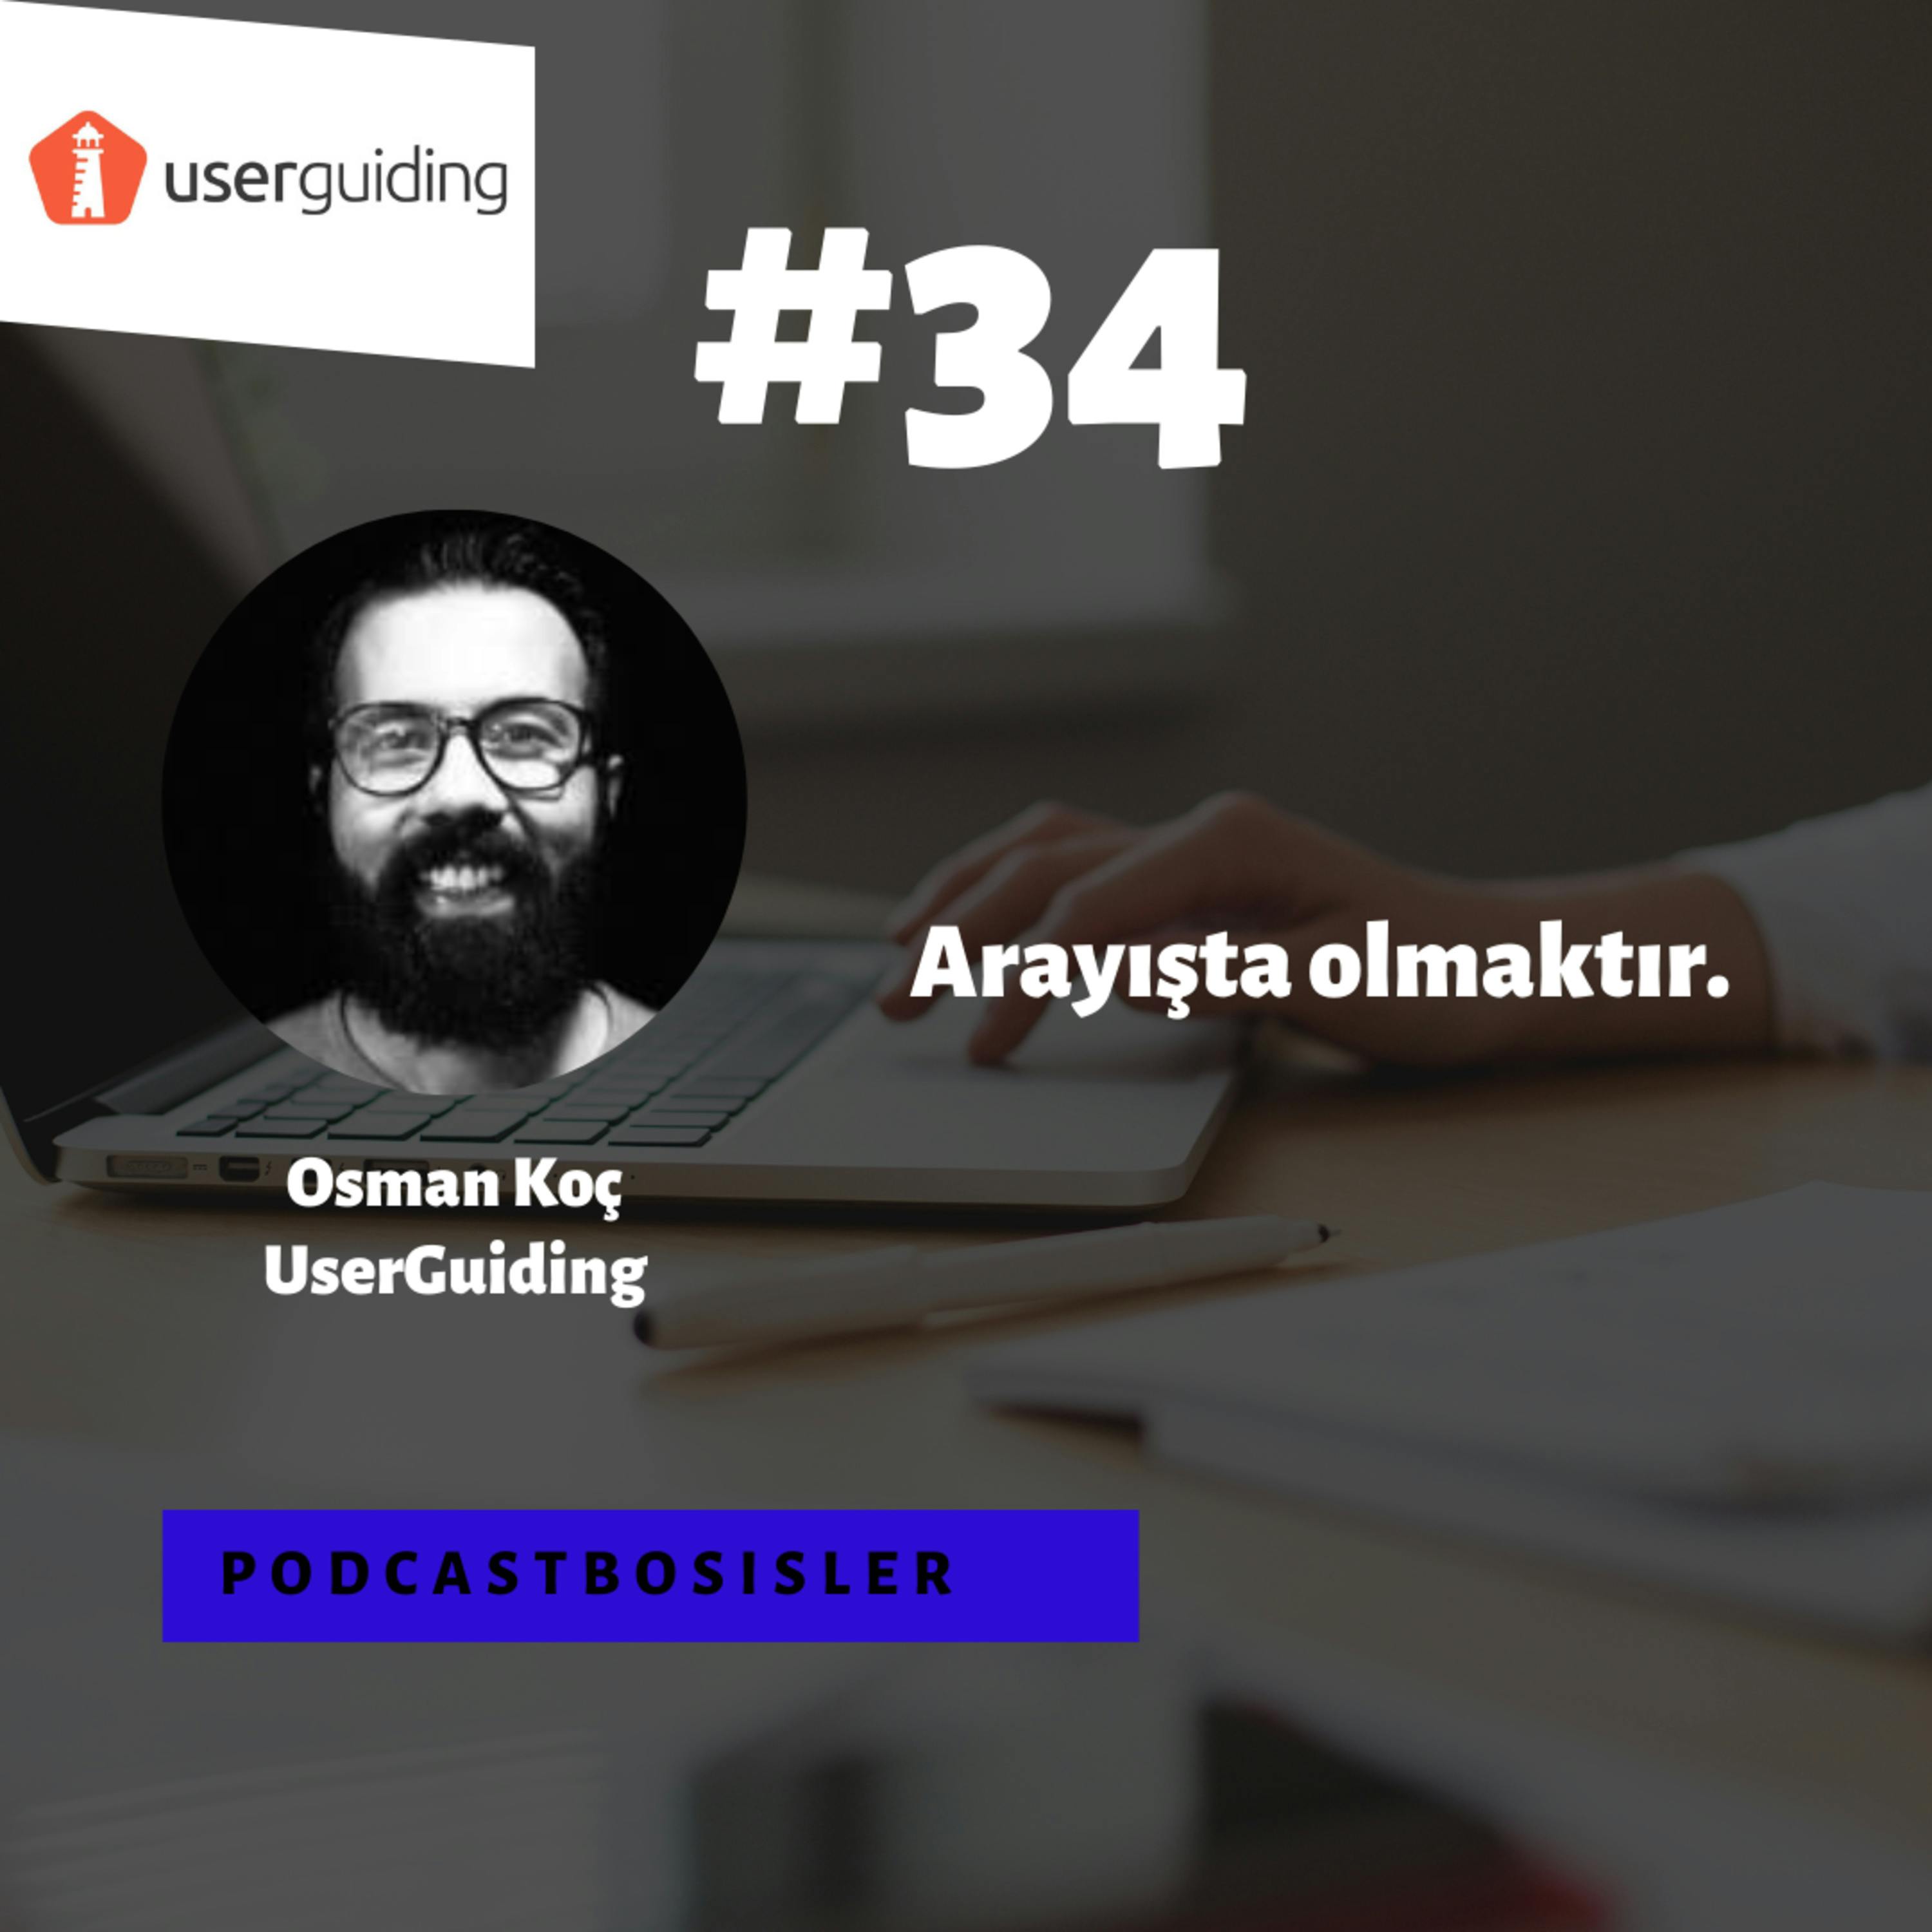 #34 UserGuiding kurucu ortaklarından Osman Koç’la no-code teknolojilerini, girişimciliği, yatırım süreçlerini ve gelecek planlarını konuştuk